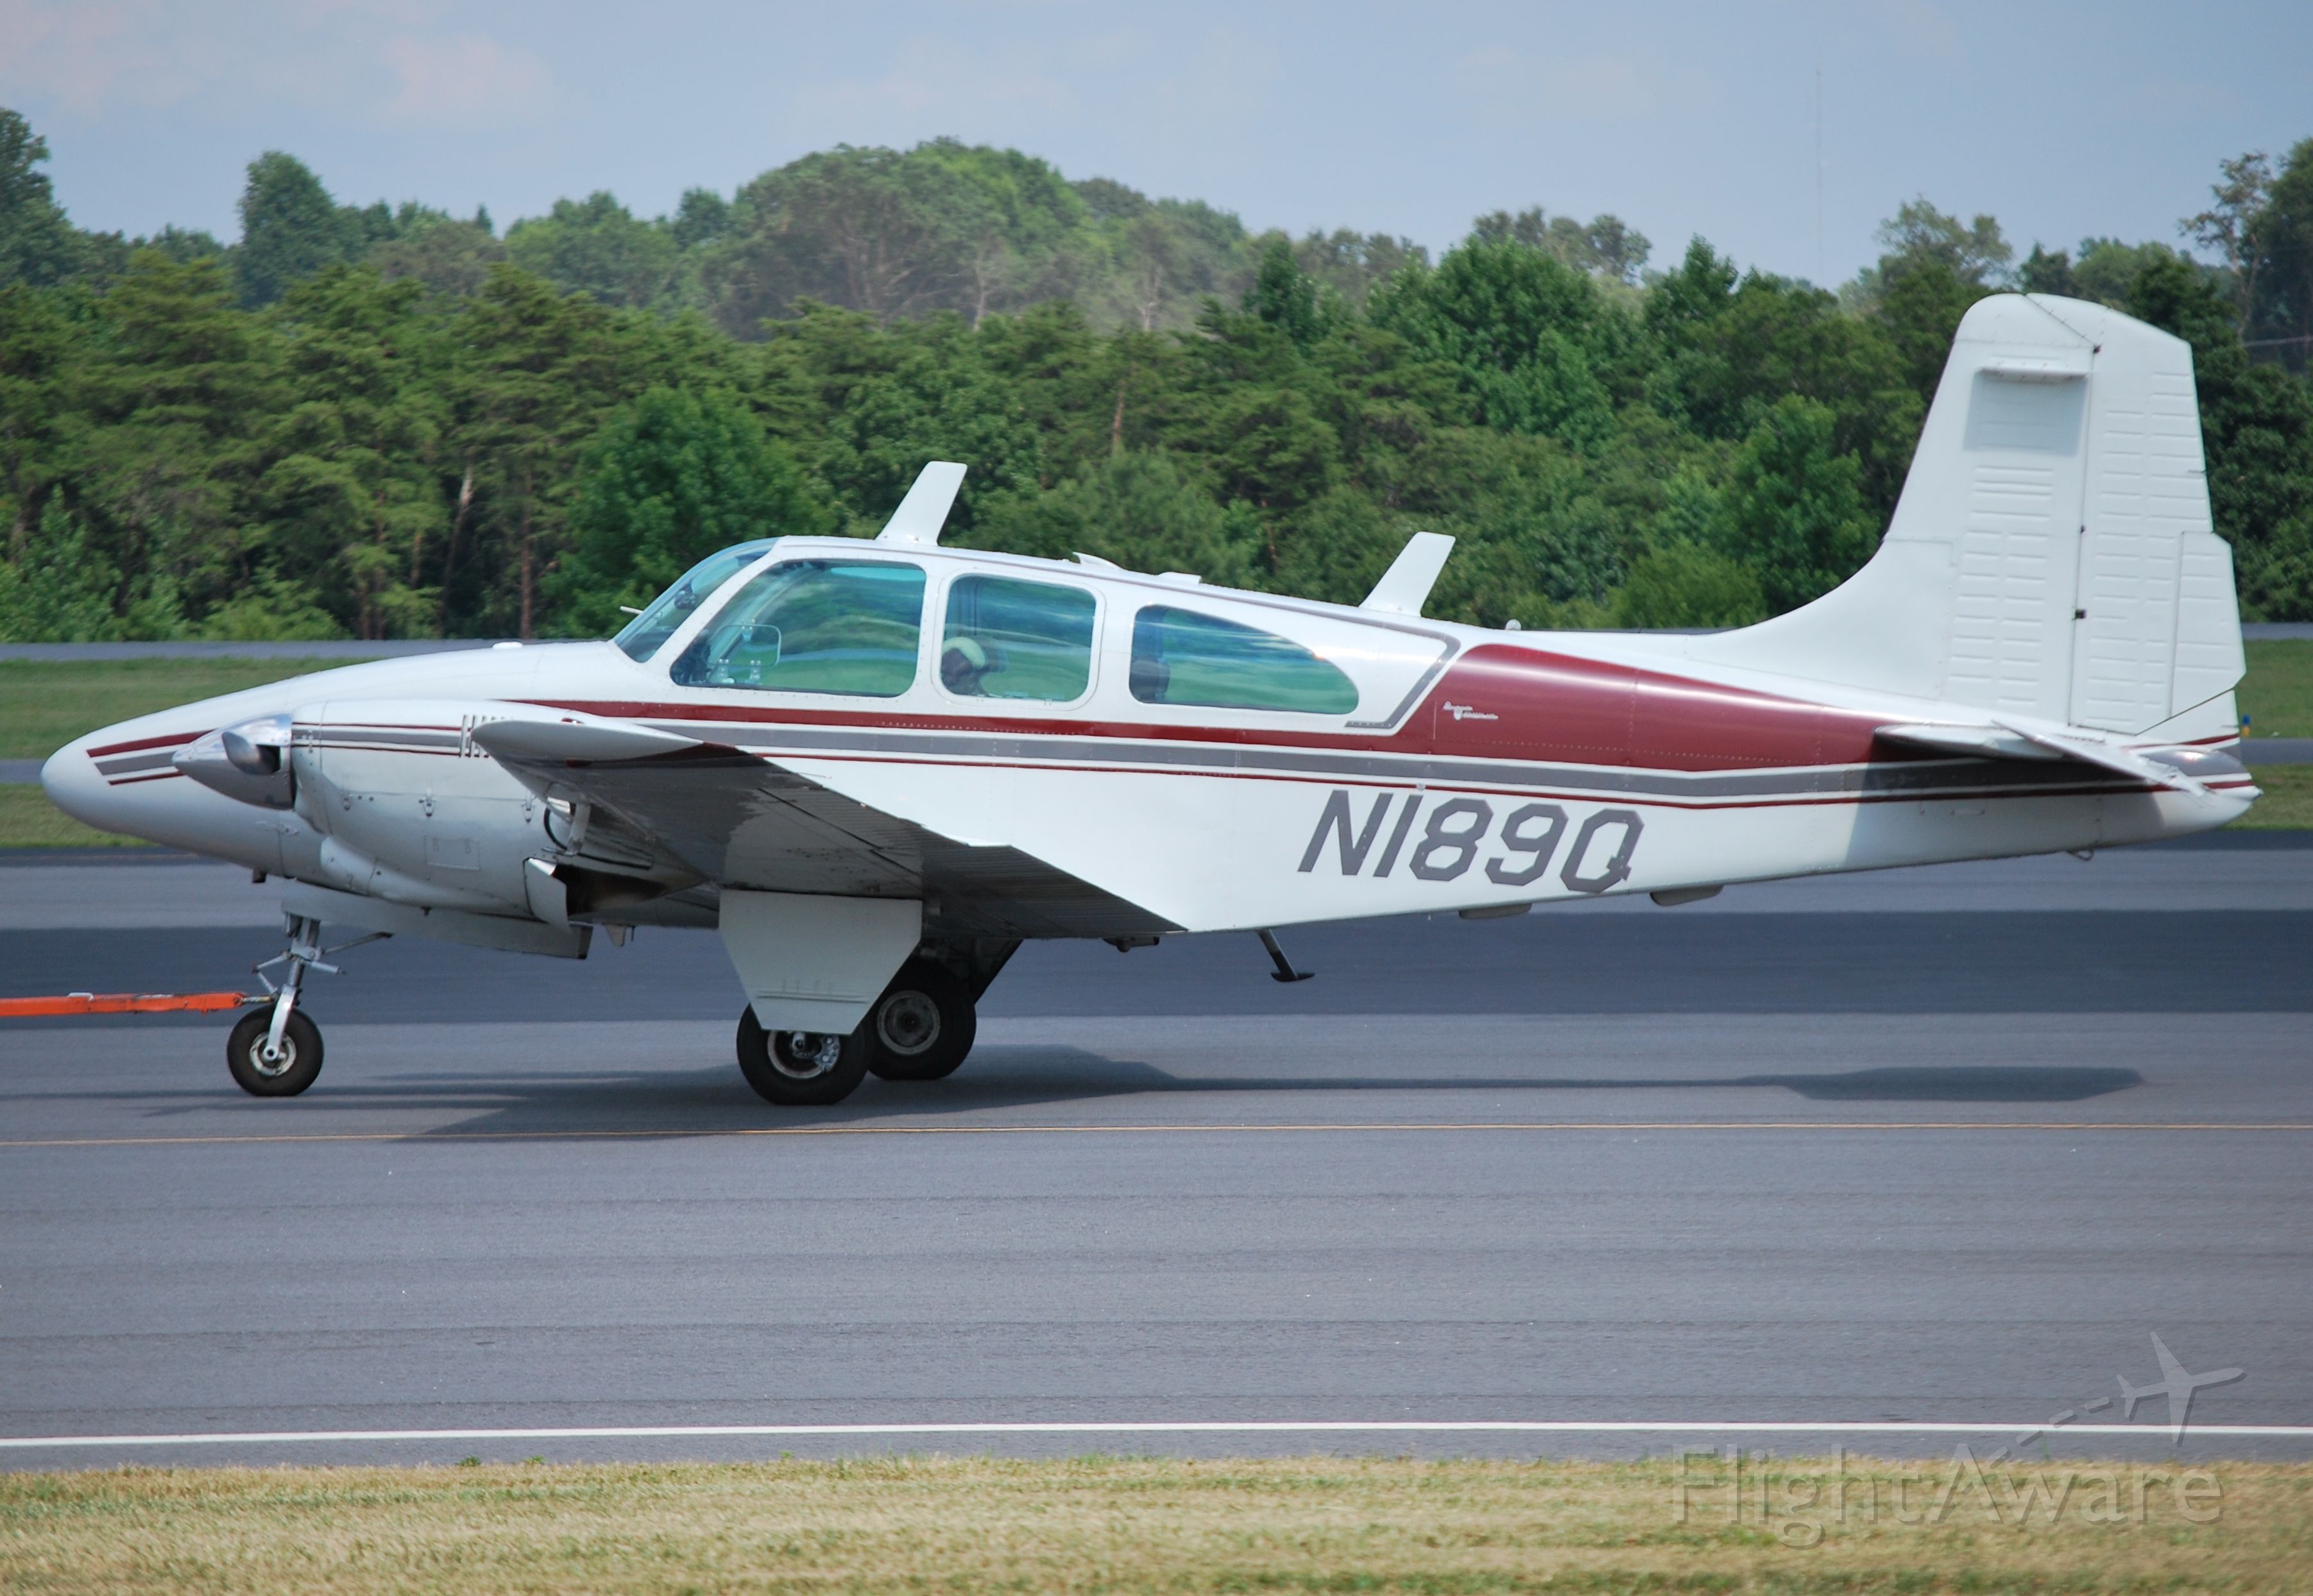 Beechcraft Travel Air (N189Q) - TRAVELAIR LLC in-tow at KJQF - 7/17/14